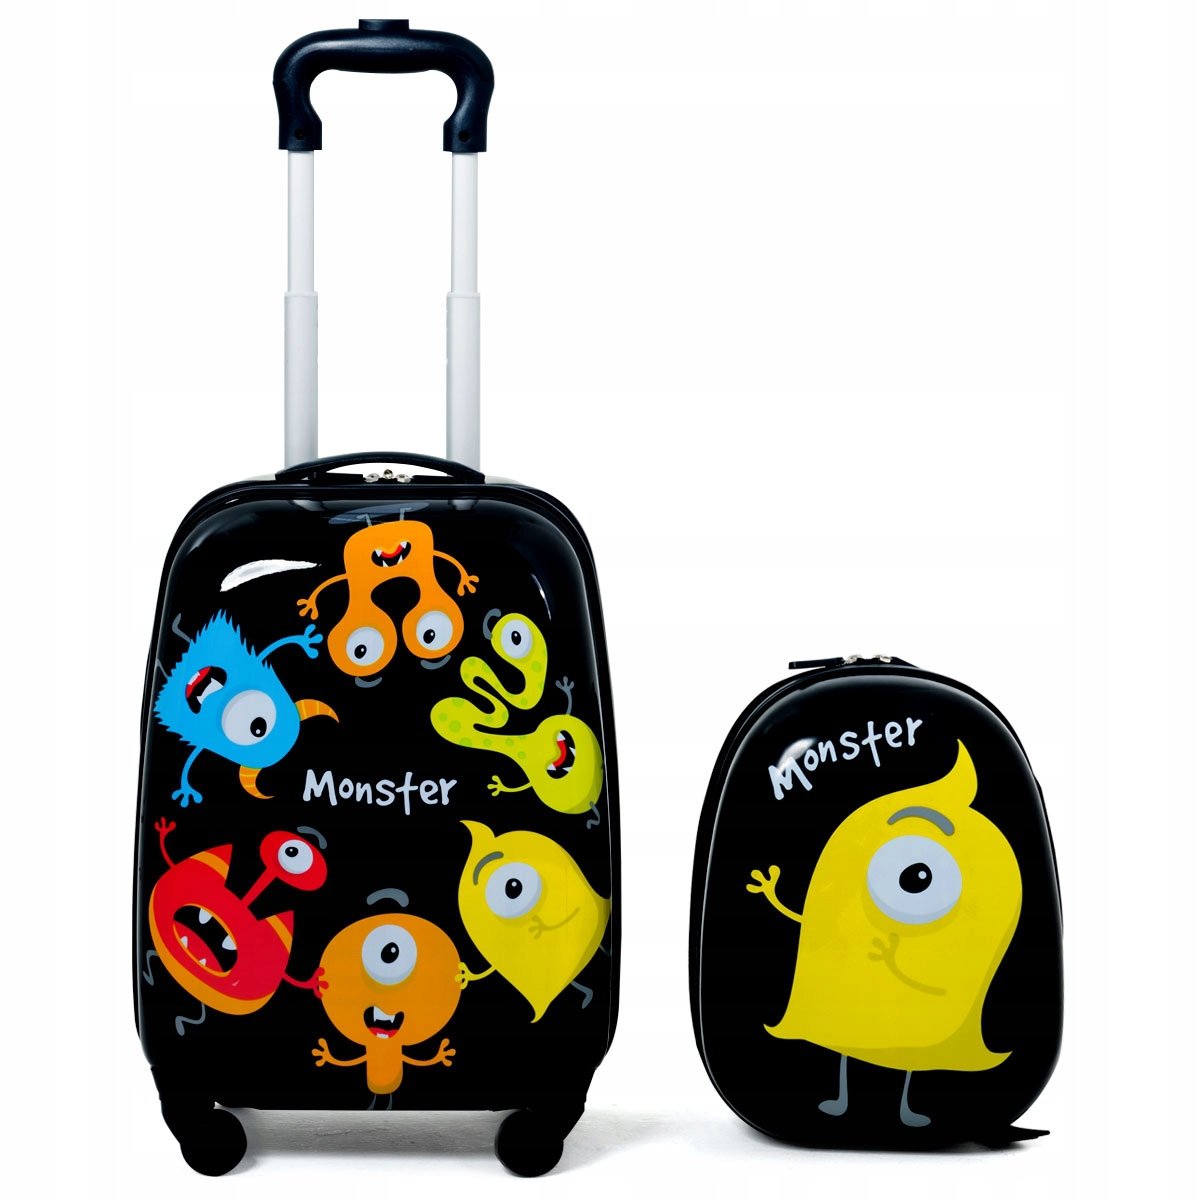 Plecak i walizka dla dziecka bagaż podręczny COSTWAY